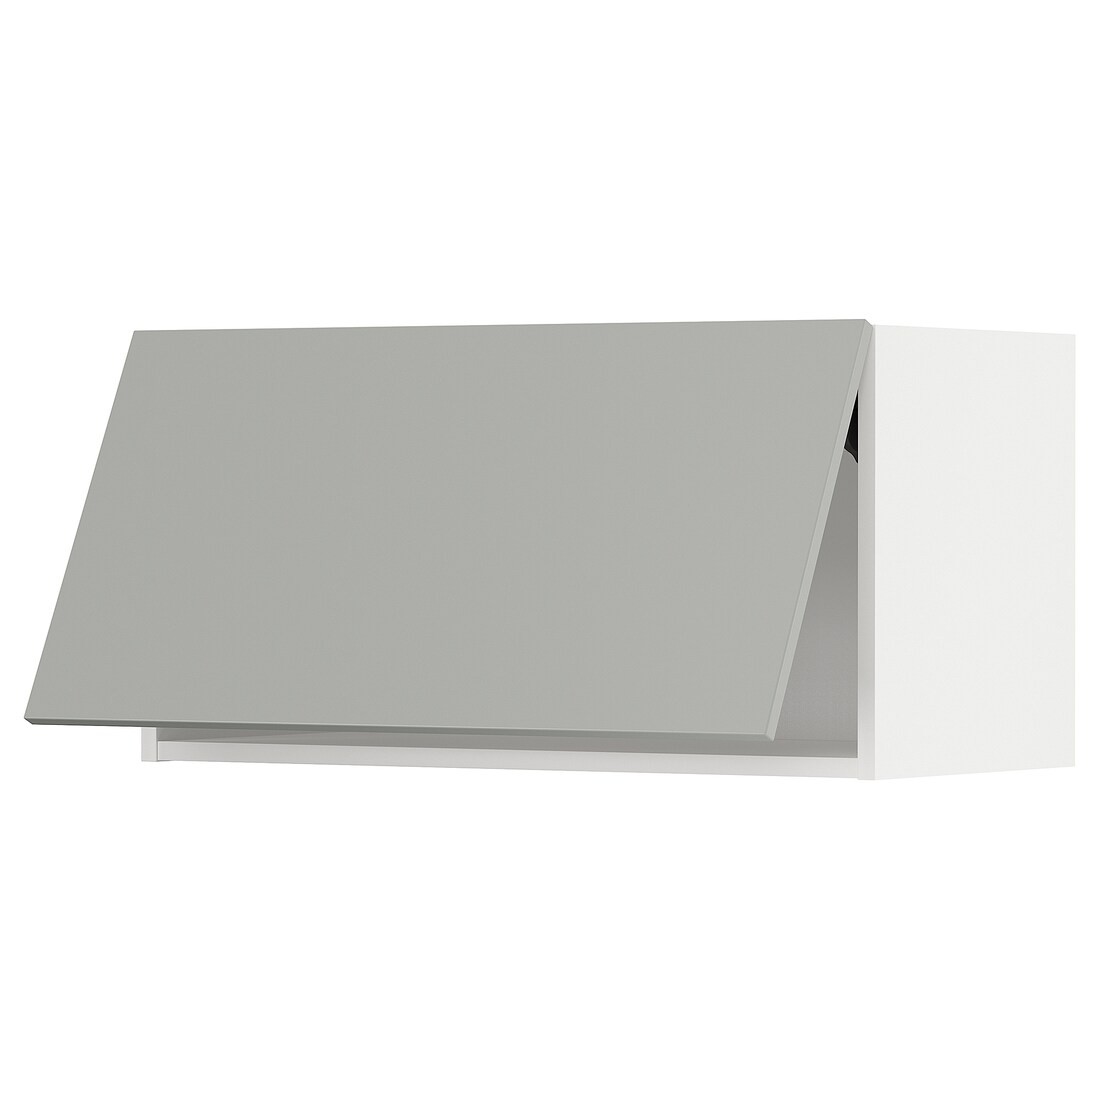 METOD Навесной горизонтальный шкаф, белый / Хавсторп светло-серый, 80x40 см